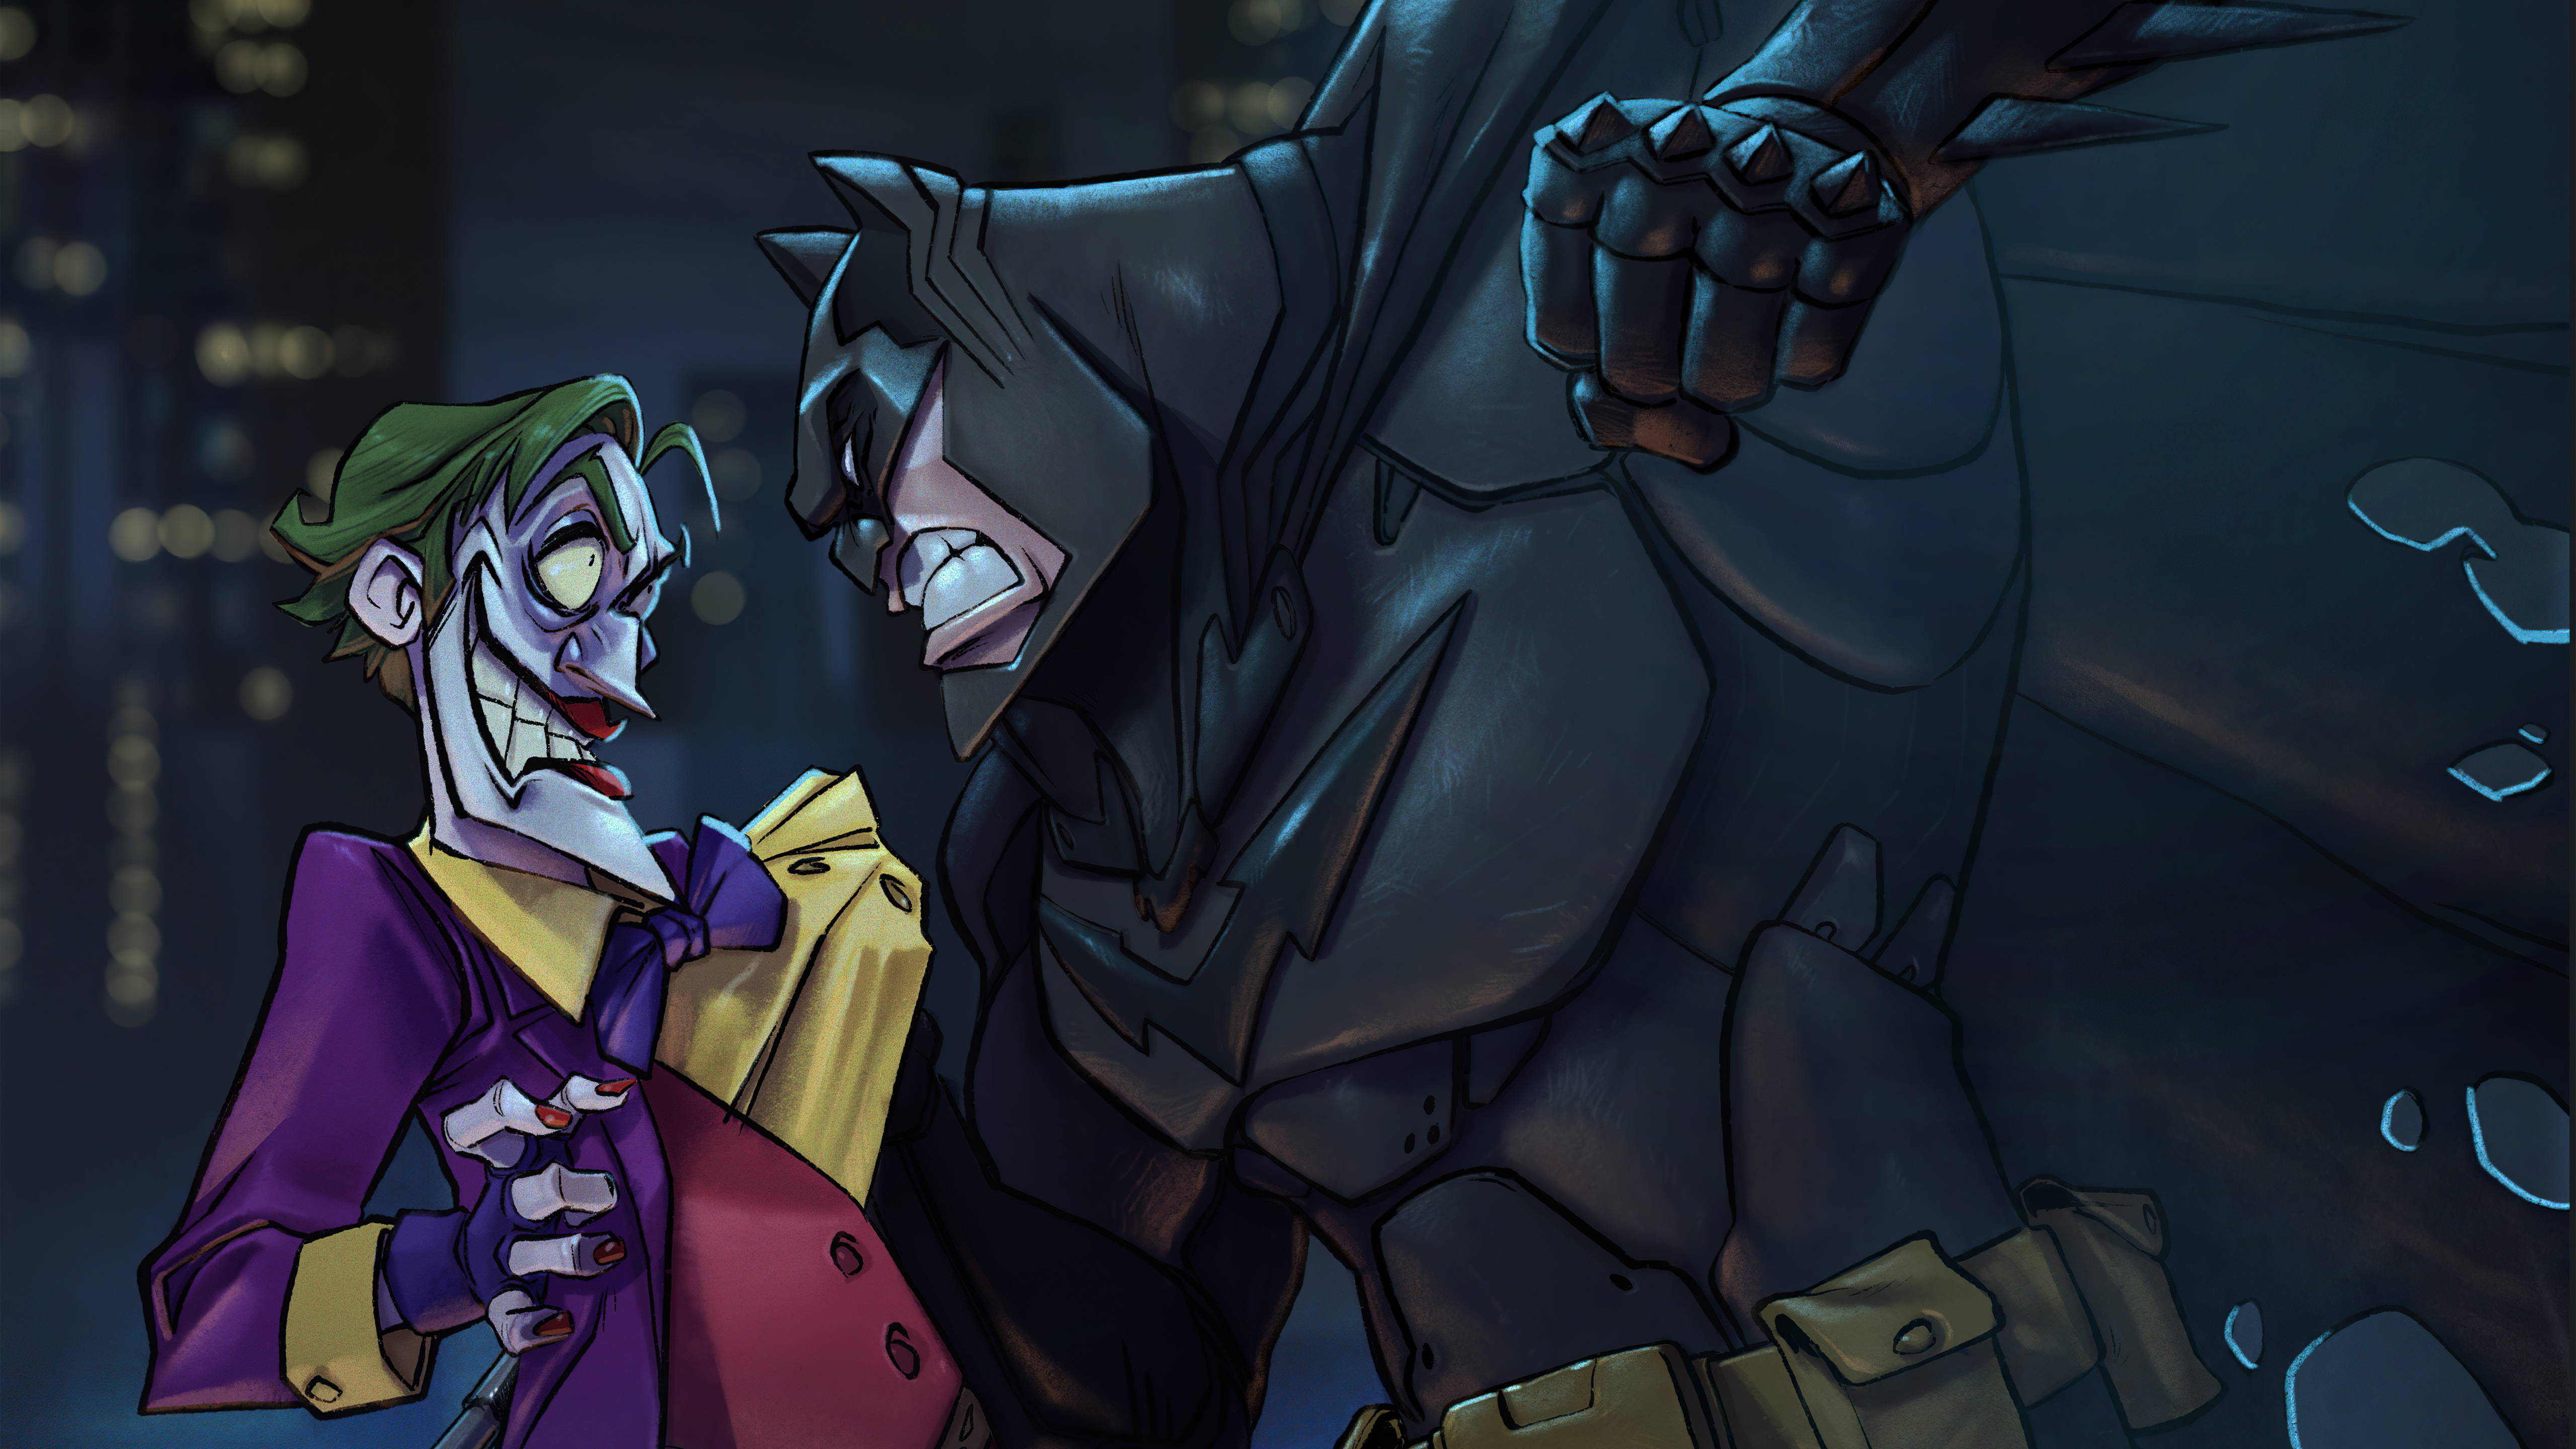 Batman Vs Joker by Renato Roldan